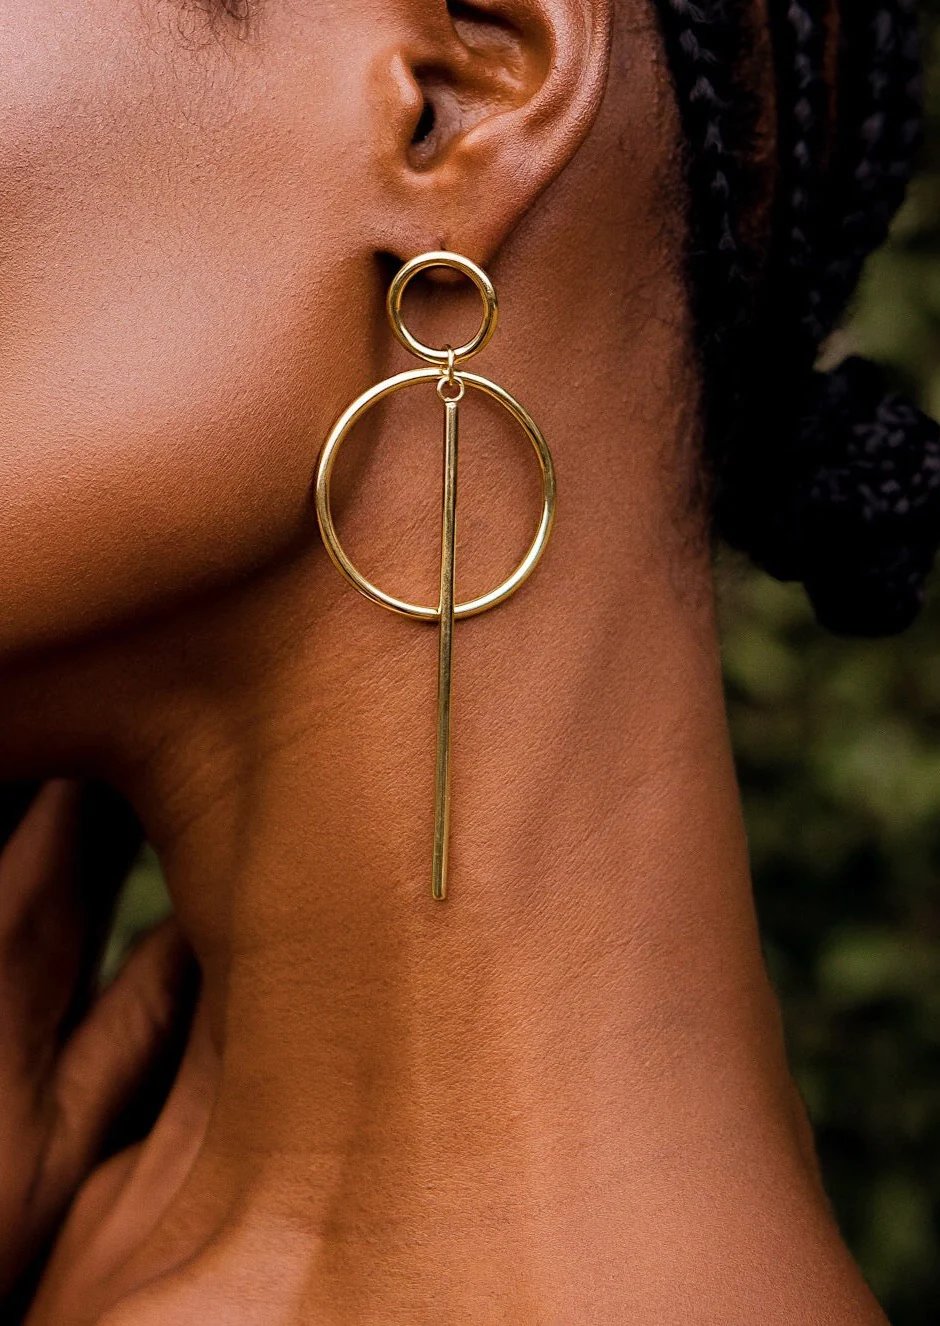 Ayanna earrings – Handmade in Kenya